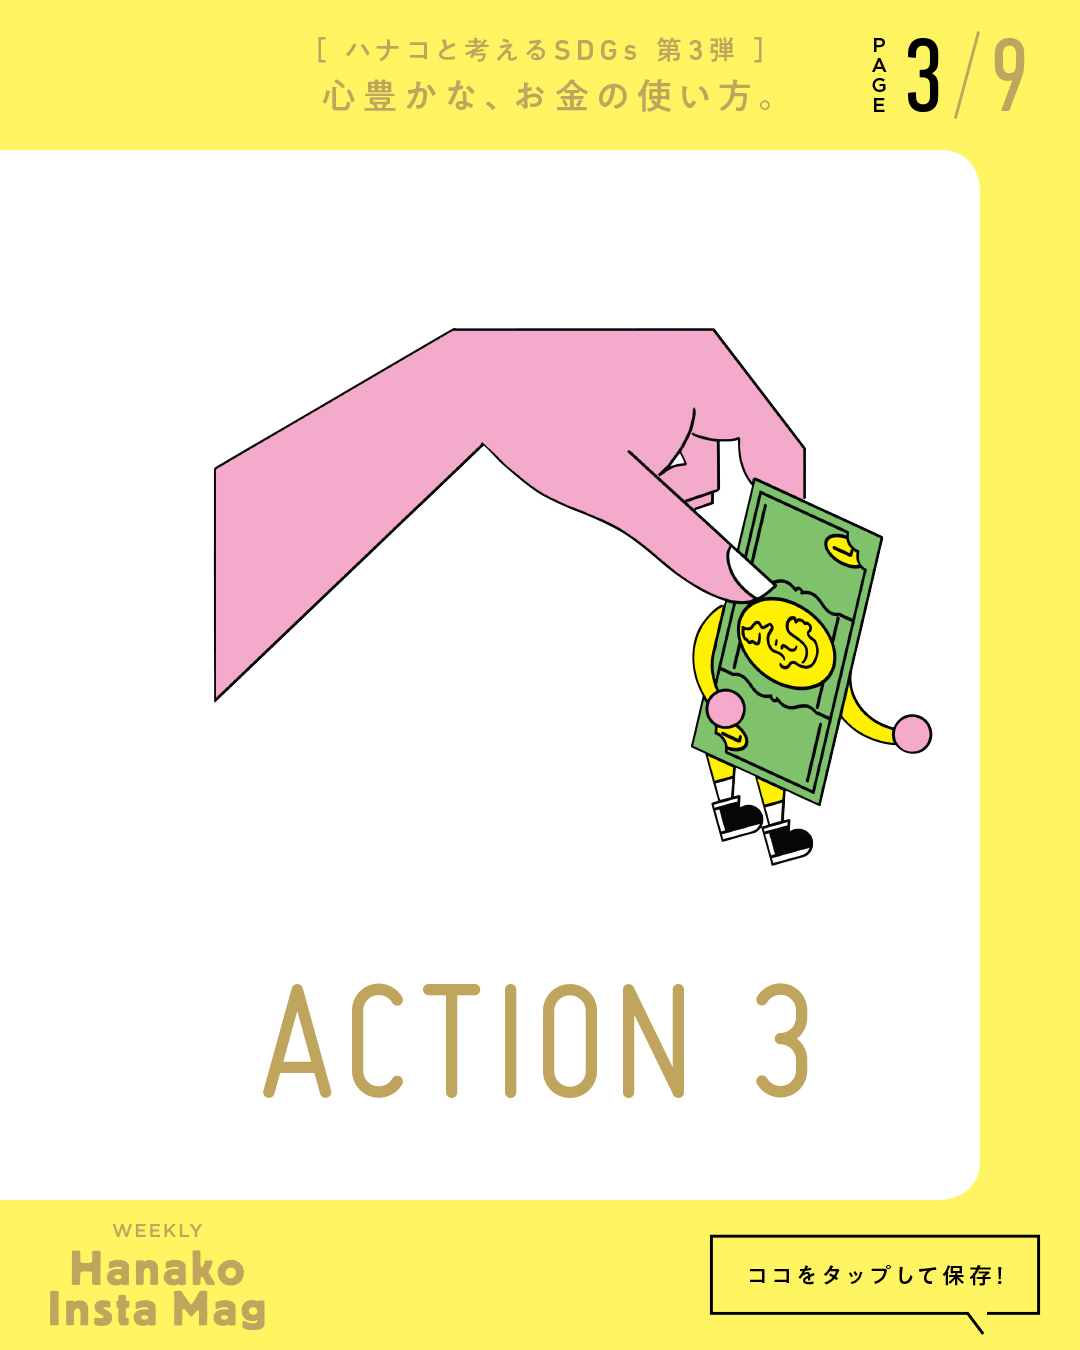 SDGs#3_sekai_action#3-3